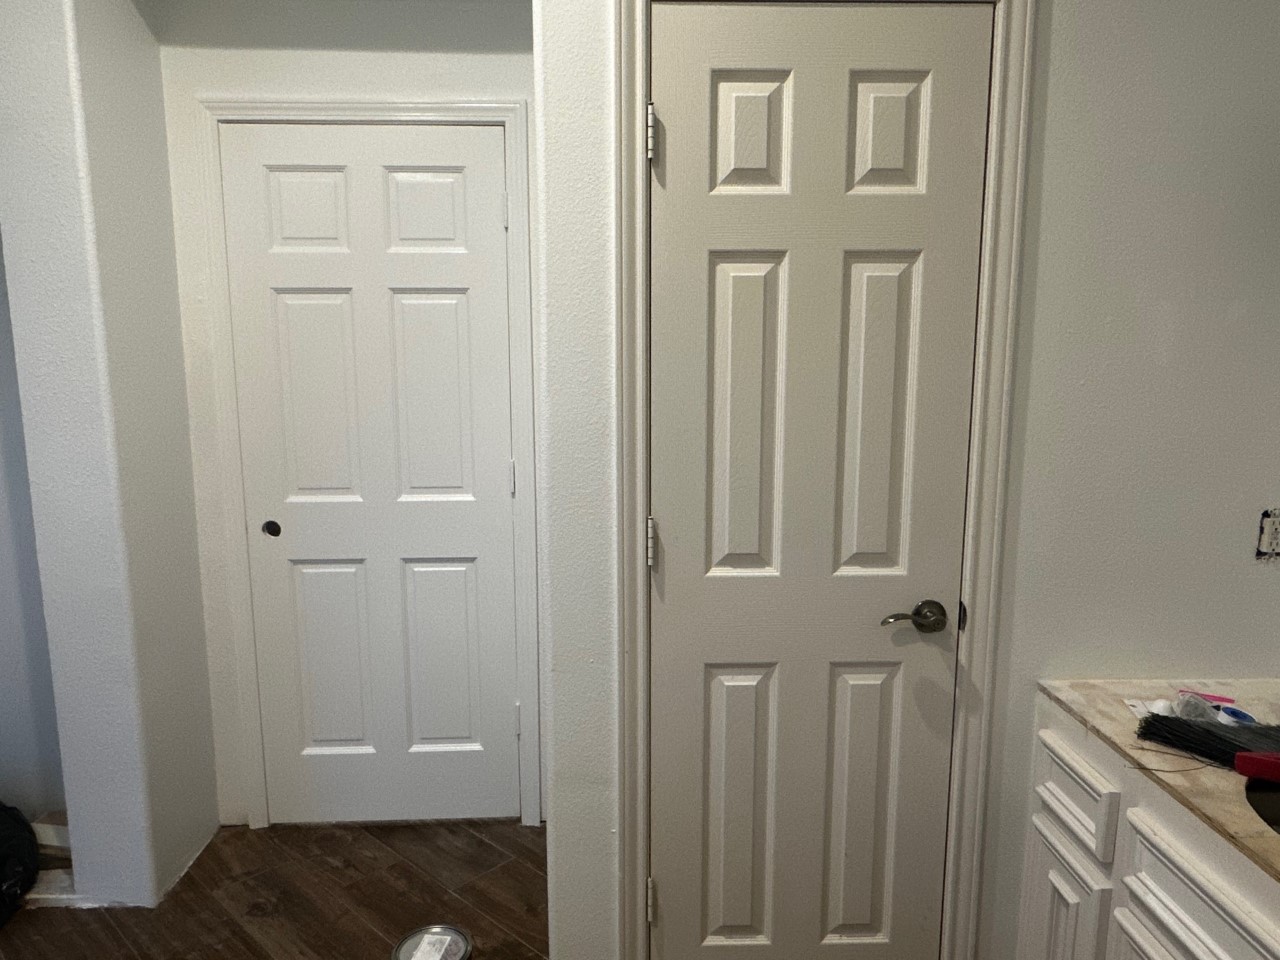 Paint colors on doors/trim do not match 